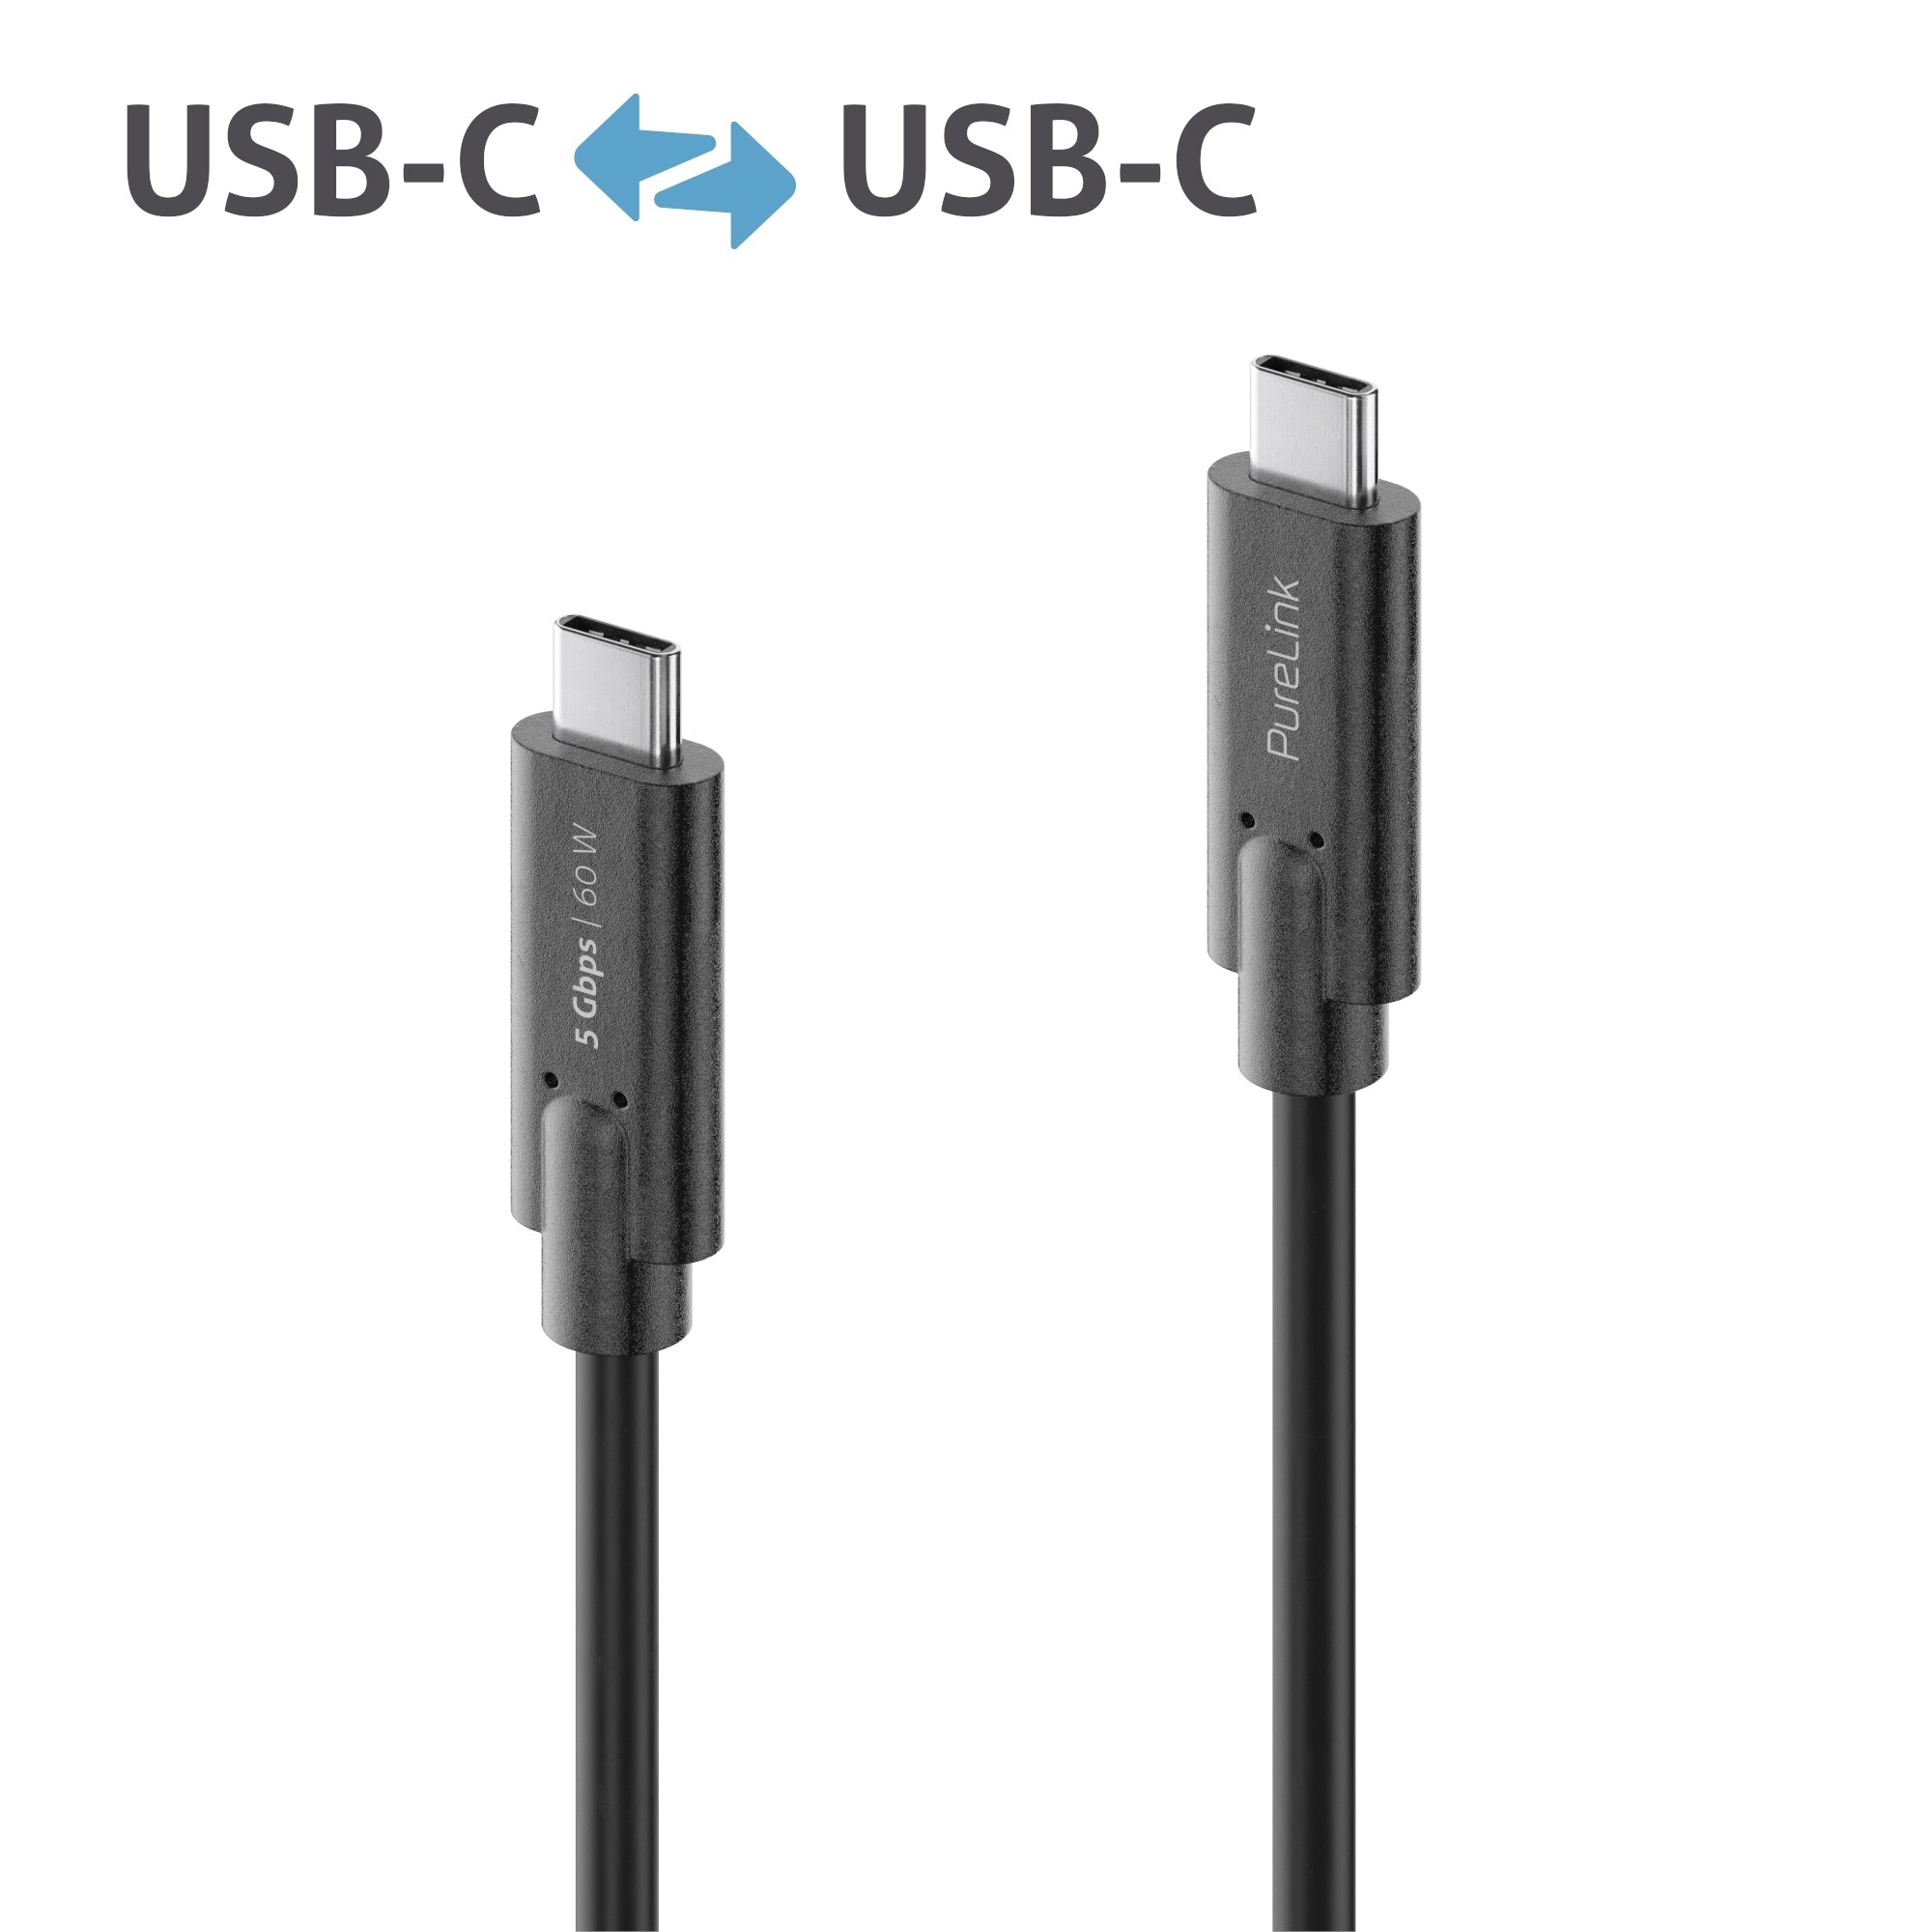 Purelink-IS2501-010-USB-C-auf-USB-C-Kabel-1m-schwarz